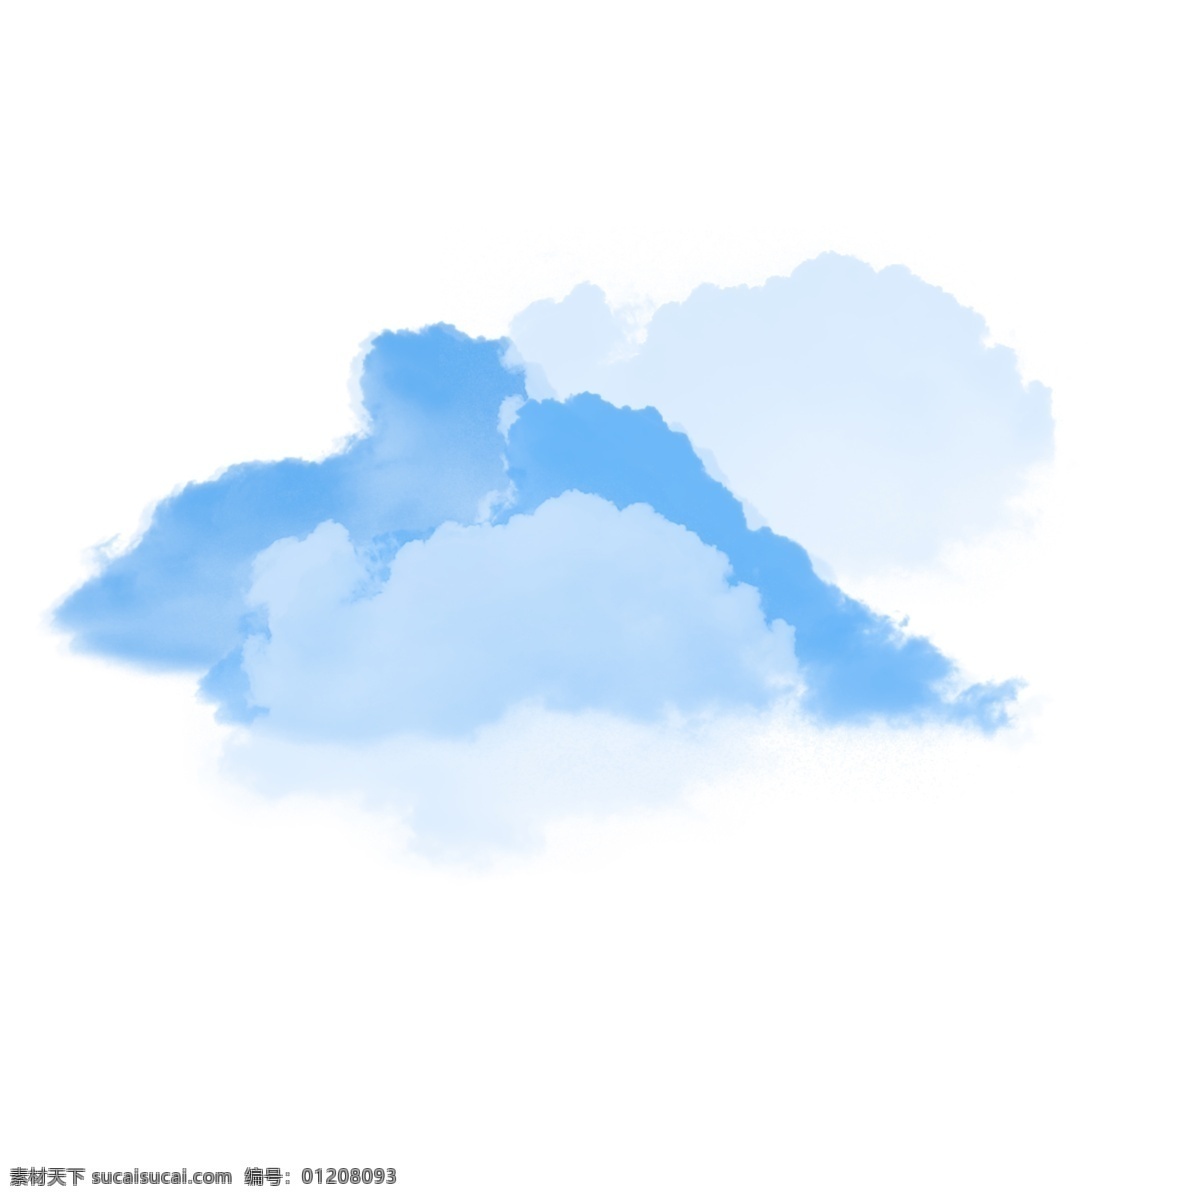 白色 云朵 云雾 元素 天气 下雨 保护 环境 多云 乌云 雨后 空气清新 漂浮 层次 叠加 宜居